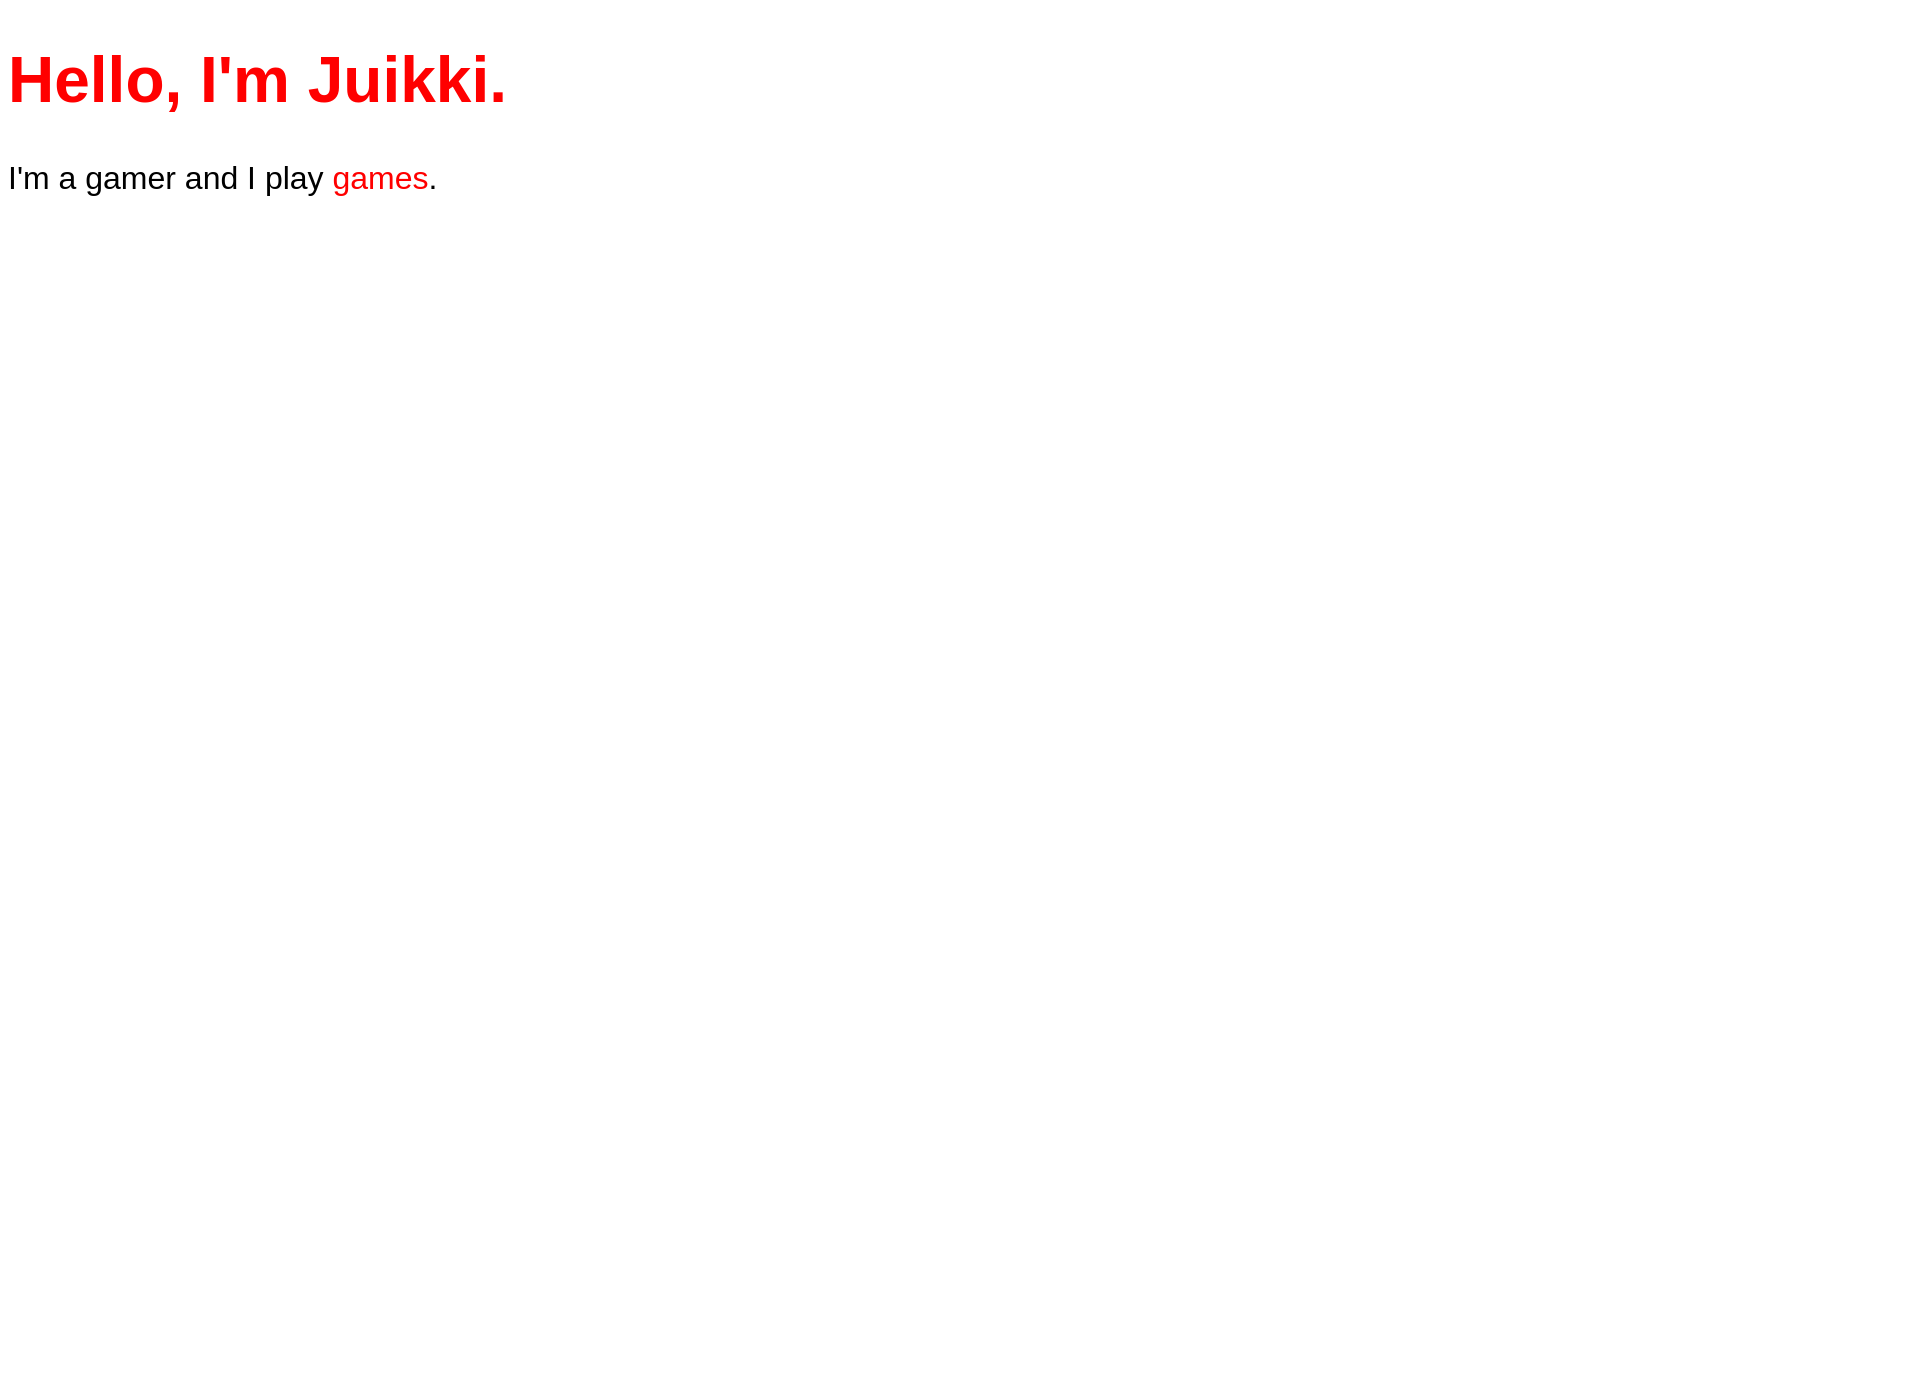 Skärmdump för juikki.fi